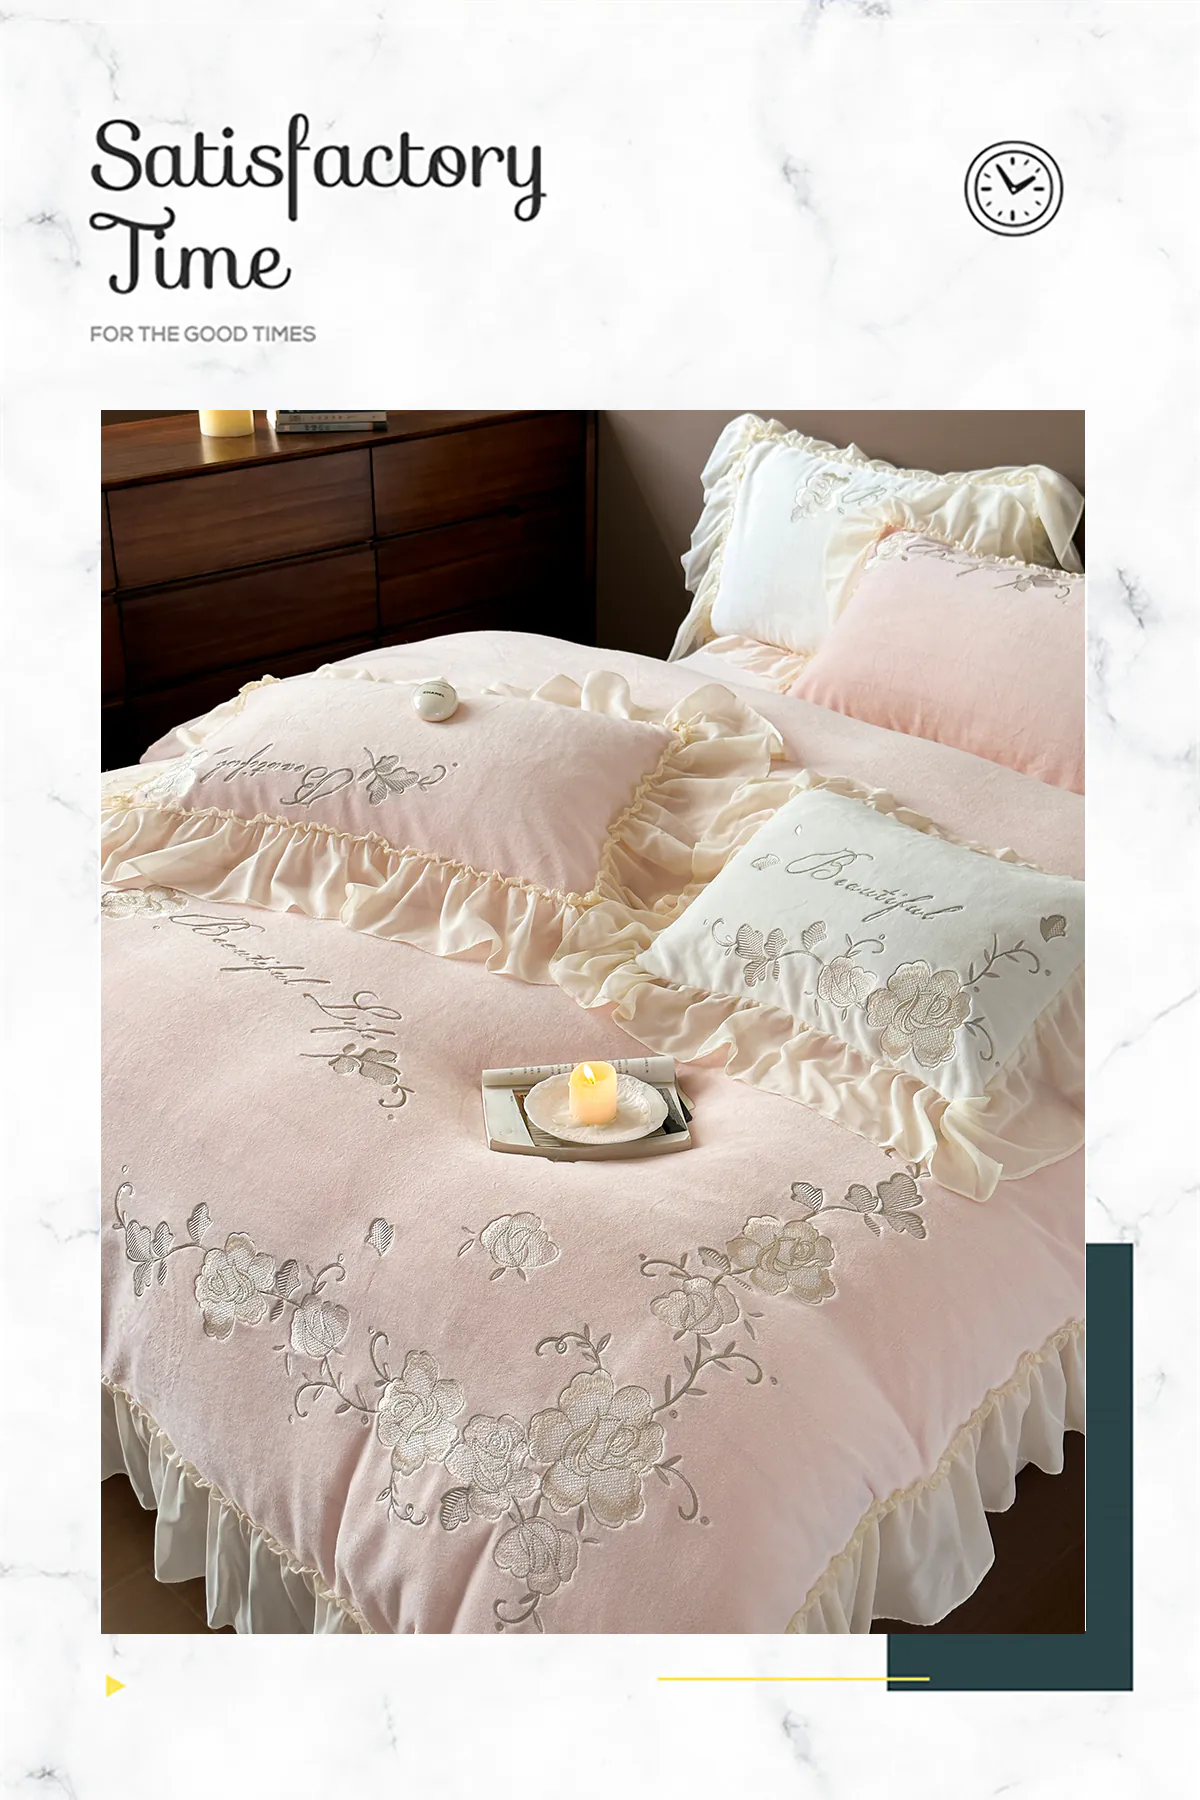 Aesthetic-Soft-Milk-Fiber-Duvet-Cover-Bed-Sheet-Pillowcases-4-Pcs-Set10